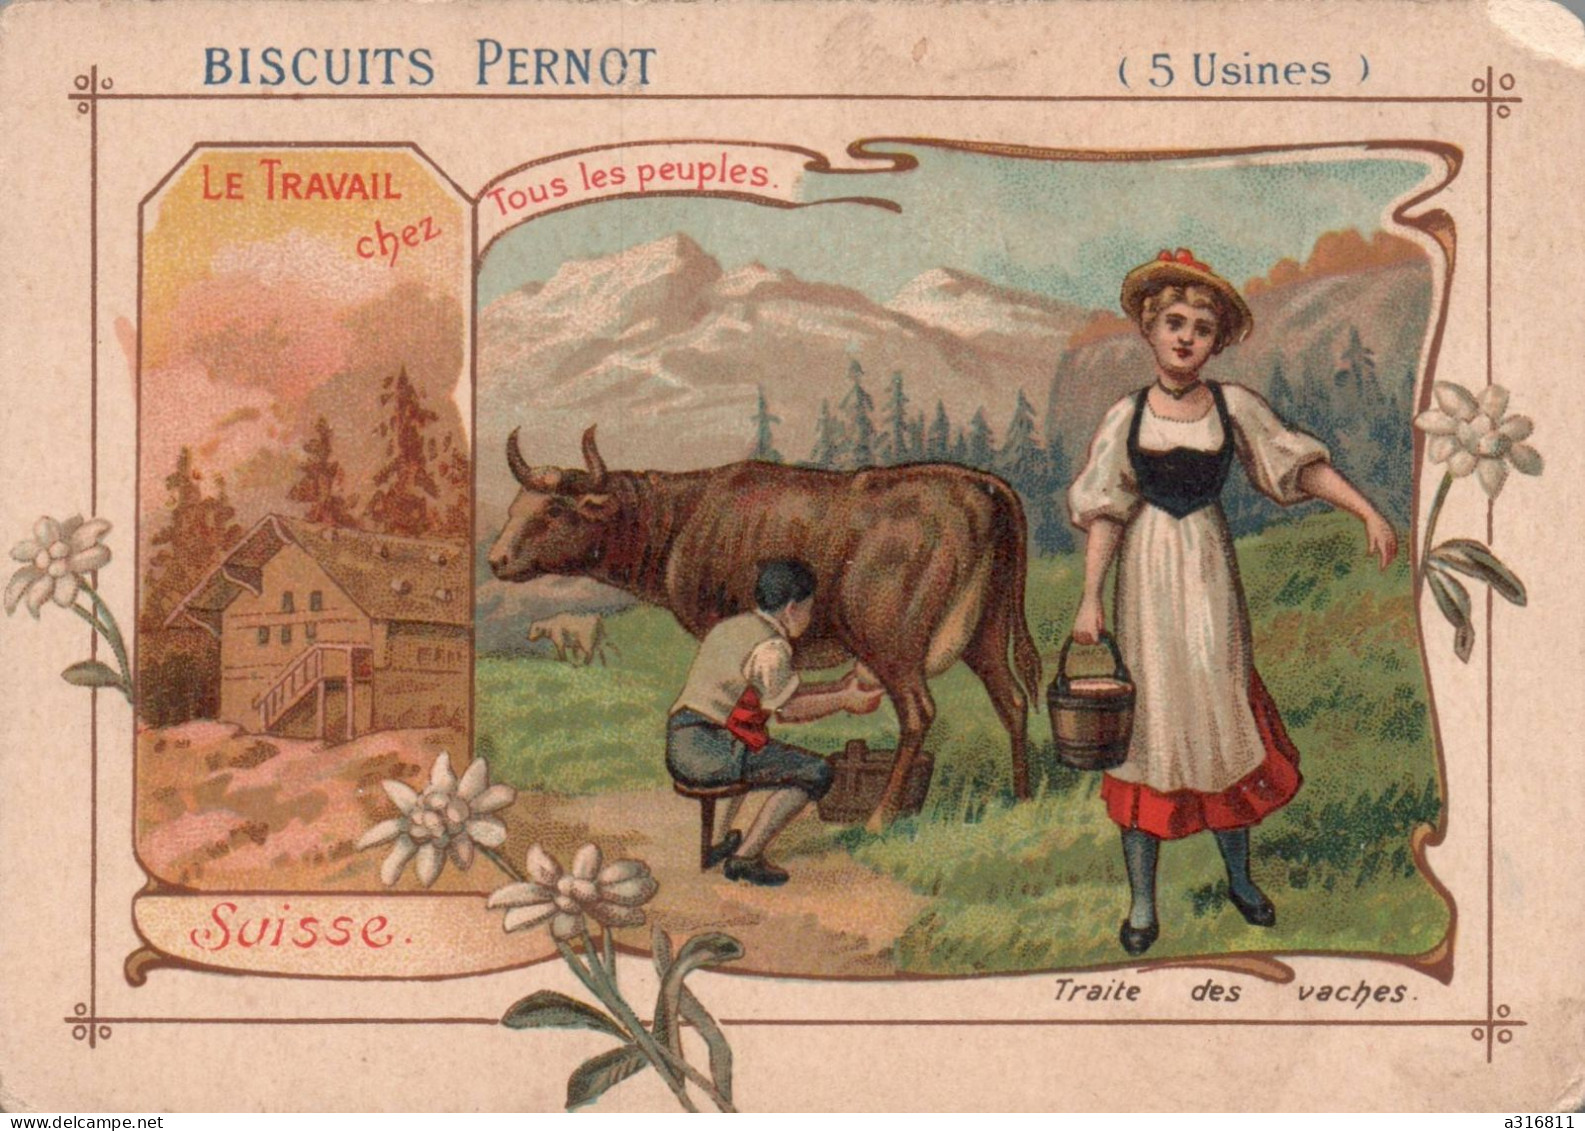 Biscuits Pernot - ** Suisse ** - Le Travail Chez Tous Les Peuples - Pernot